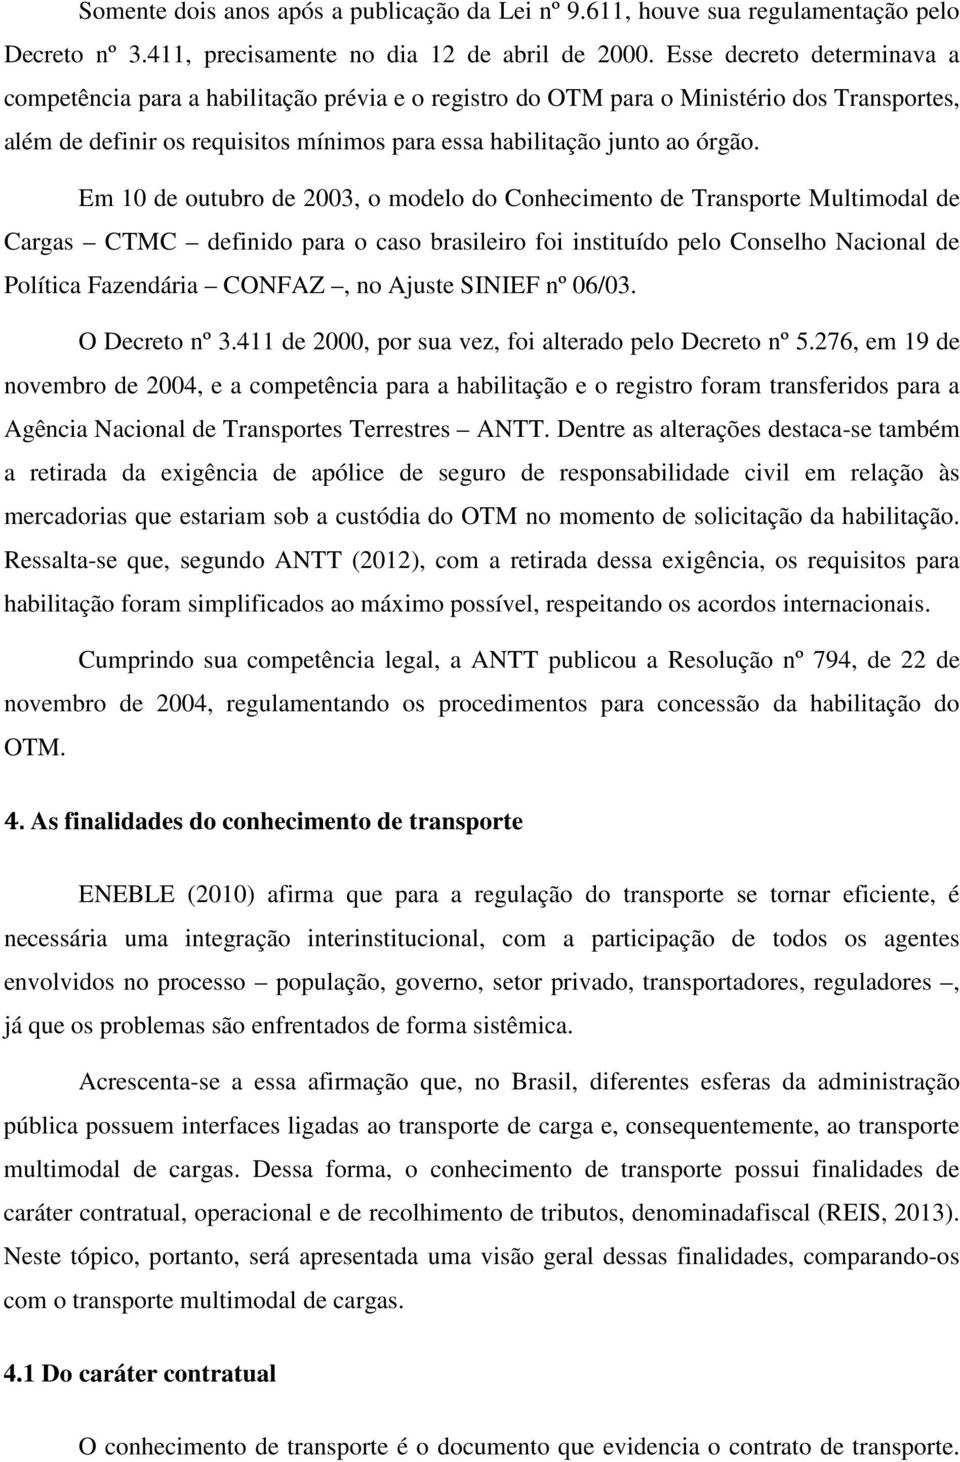 Em 10 de outubro de 2003, o modelo do Conhecimento de Transporte Multimodal de Cargas CTMC definido para o caso brasileiro foi instituído pelo Conselho Nacional de Política Fazendária CONFAZ, no